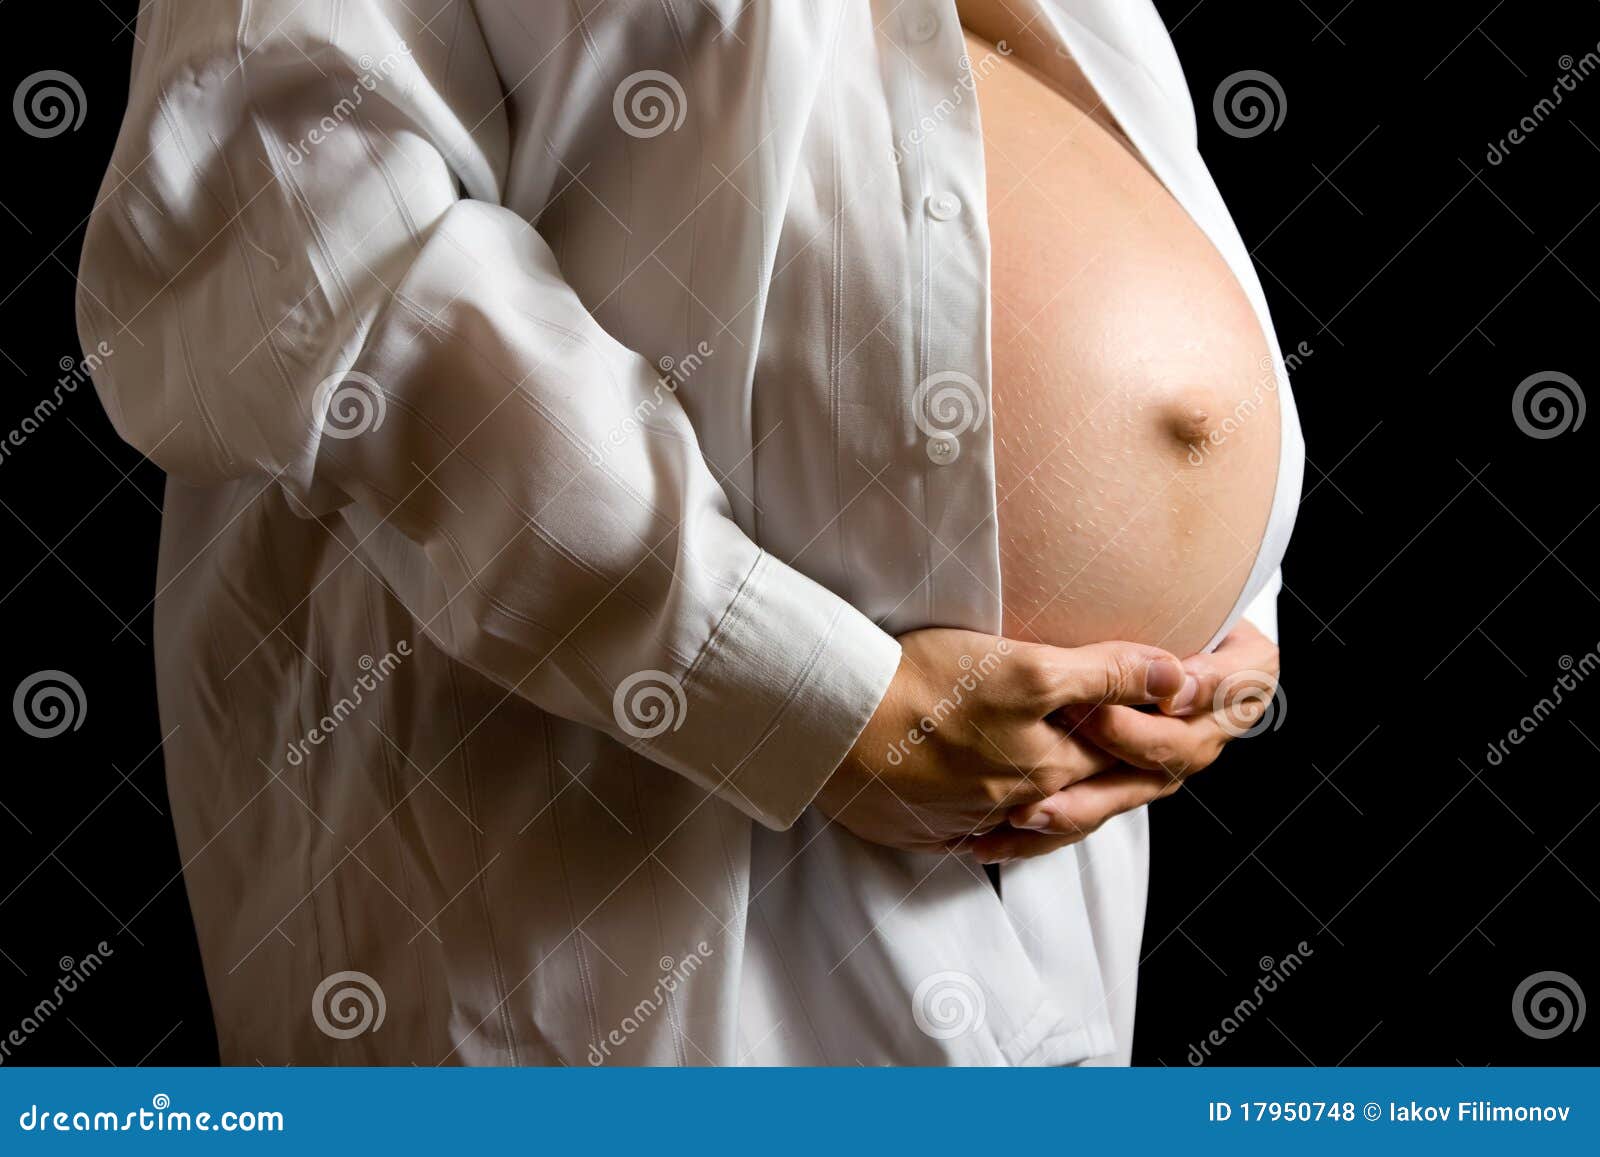 не беременна грудь будто наливается молоком фото 93